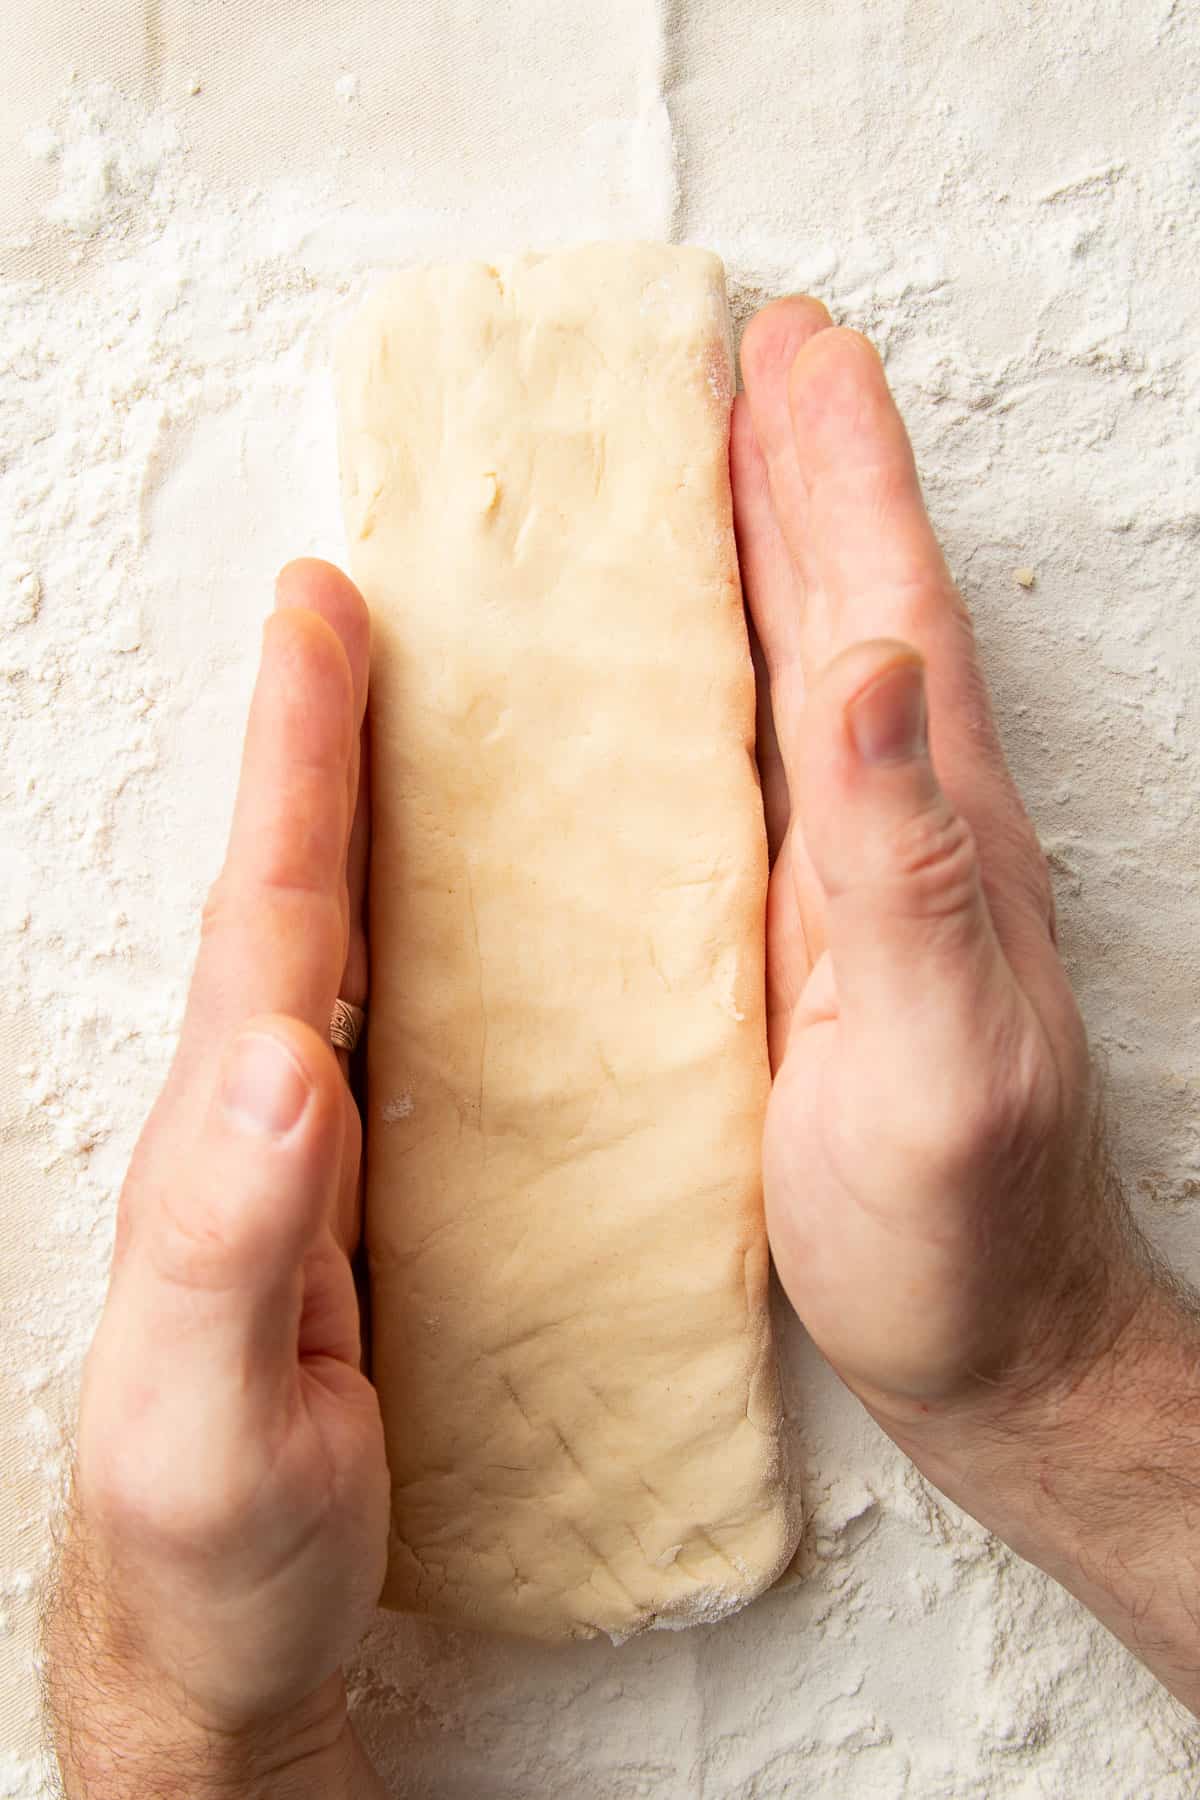 Hands shaping vegan shortbread dough into a rectangle.